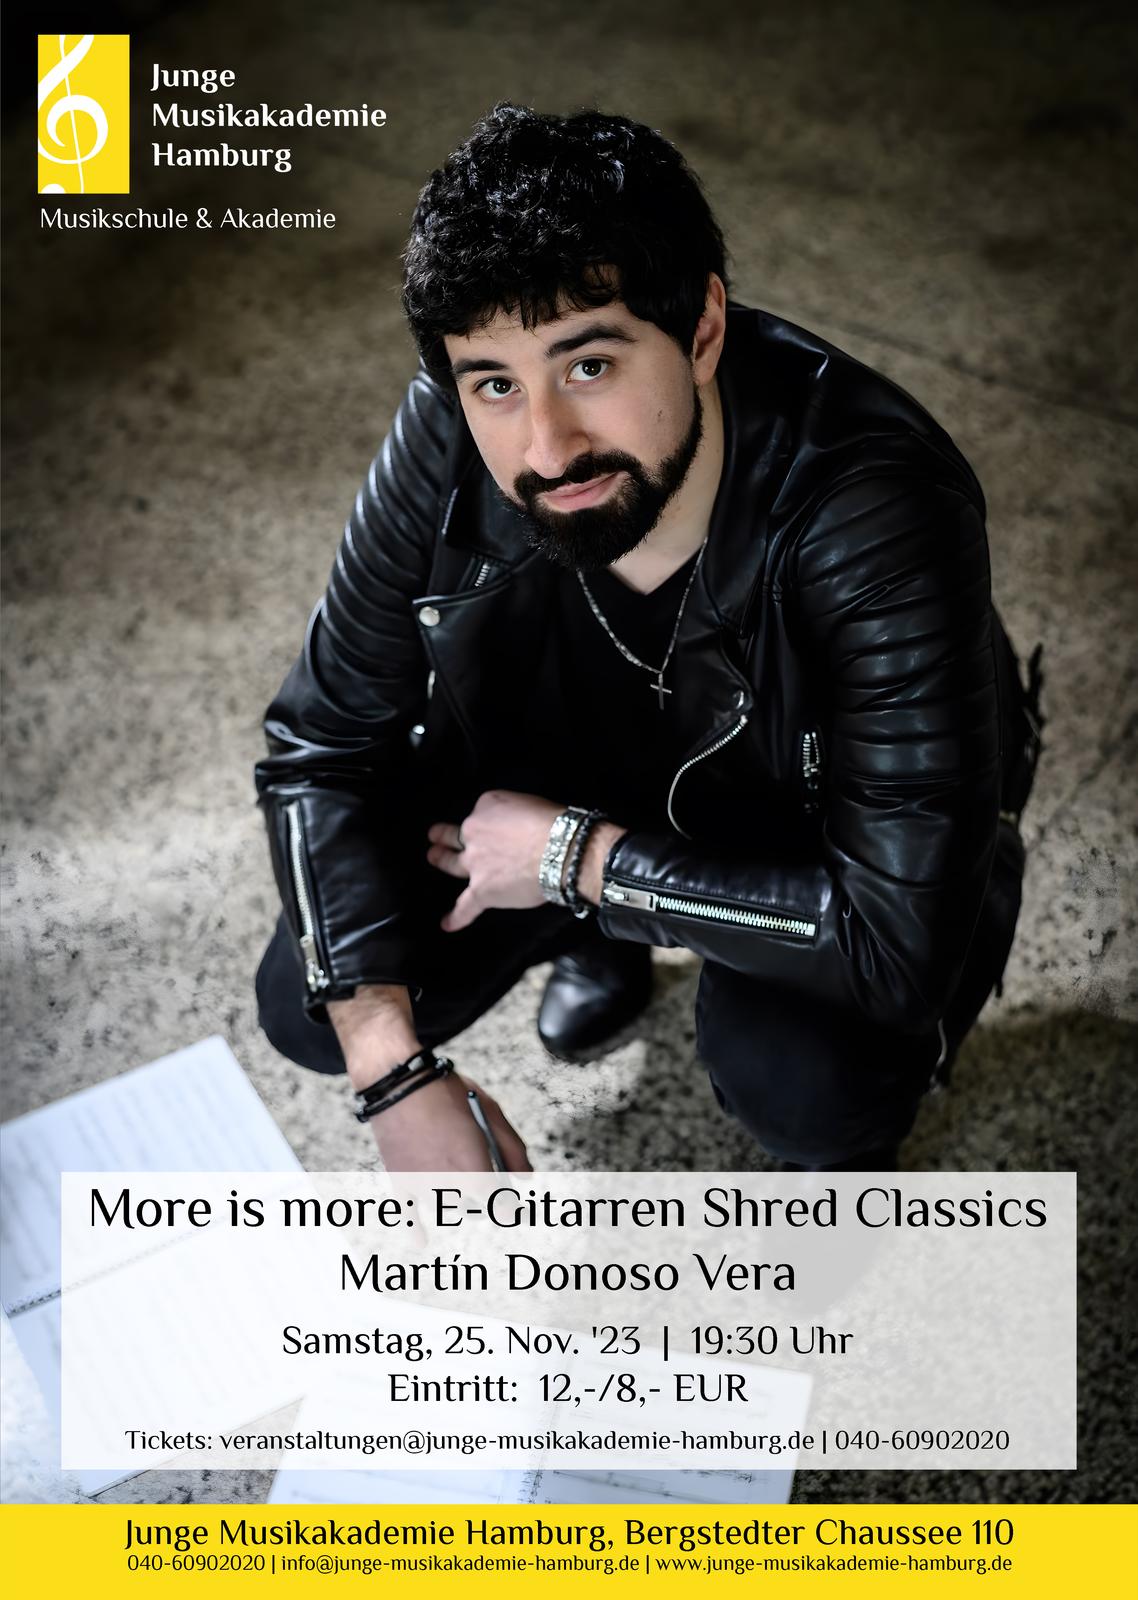 Martin Donoso Vera gibt ein Konzert mit der E-Gitarre